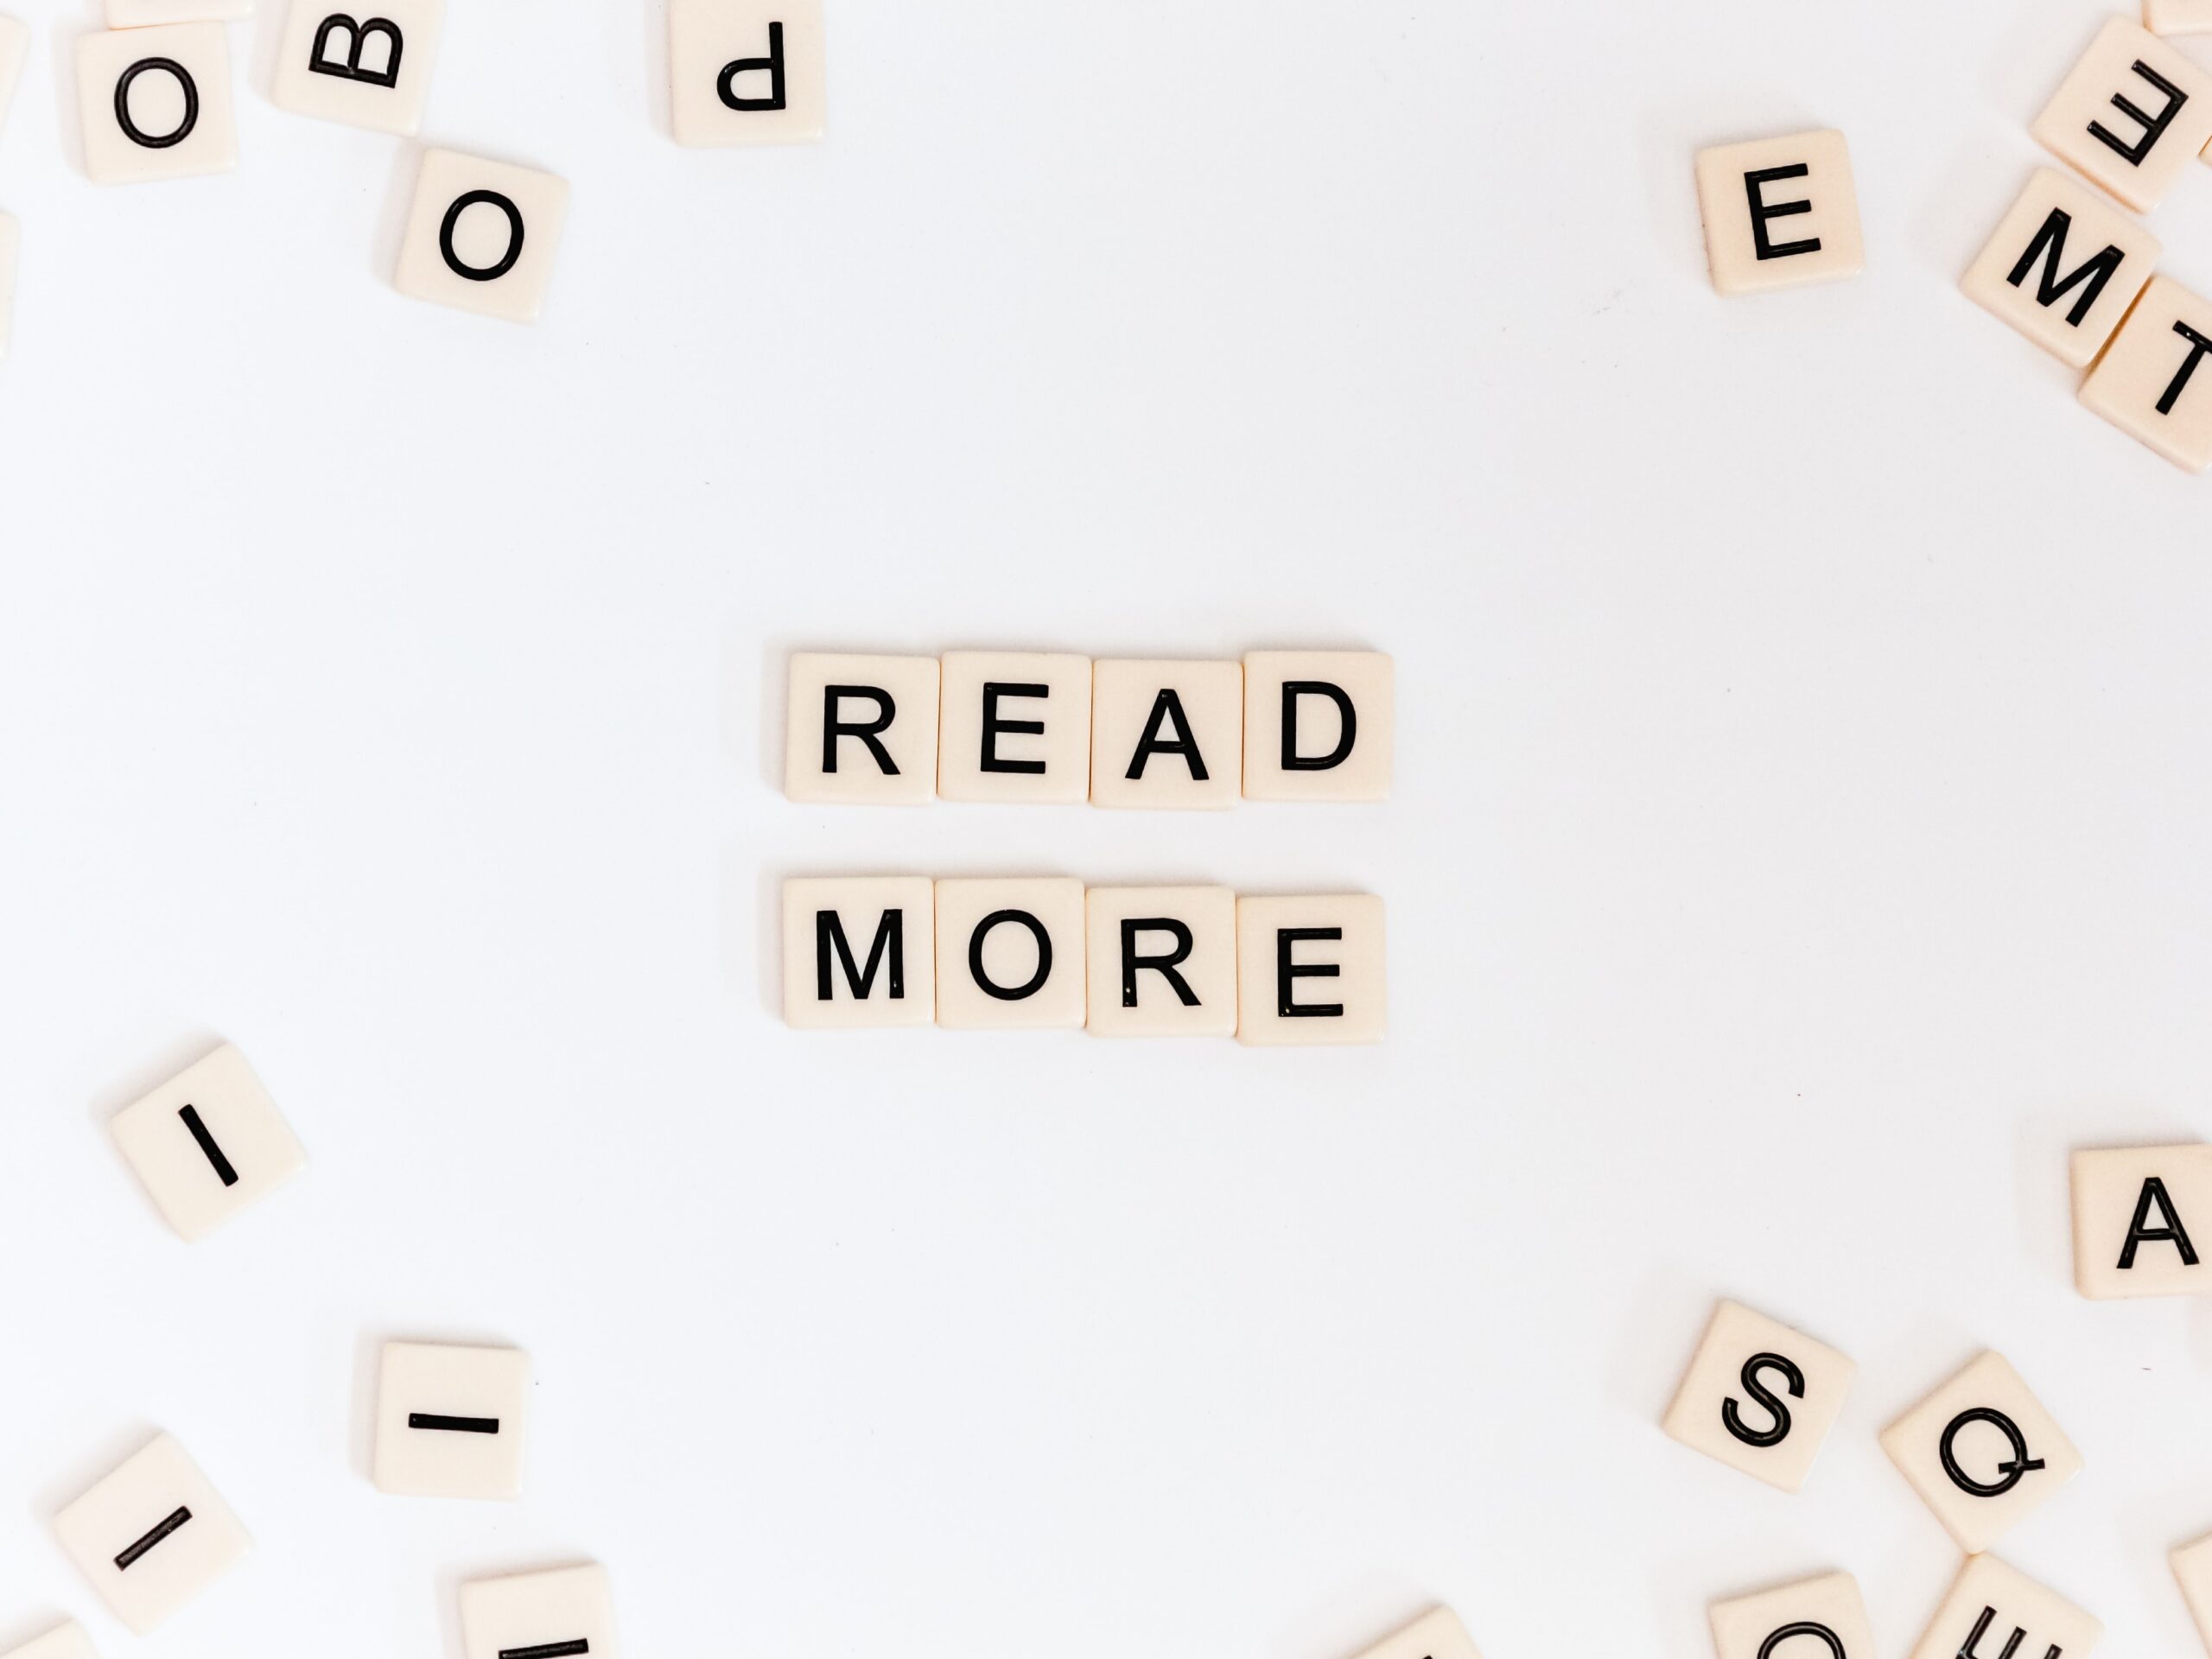 Tessere con lettere "read more"